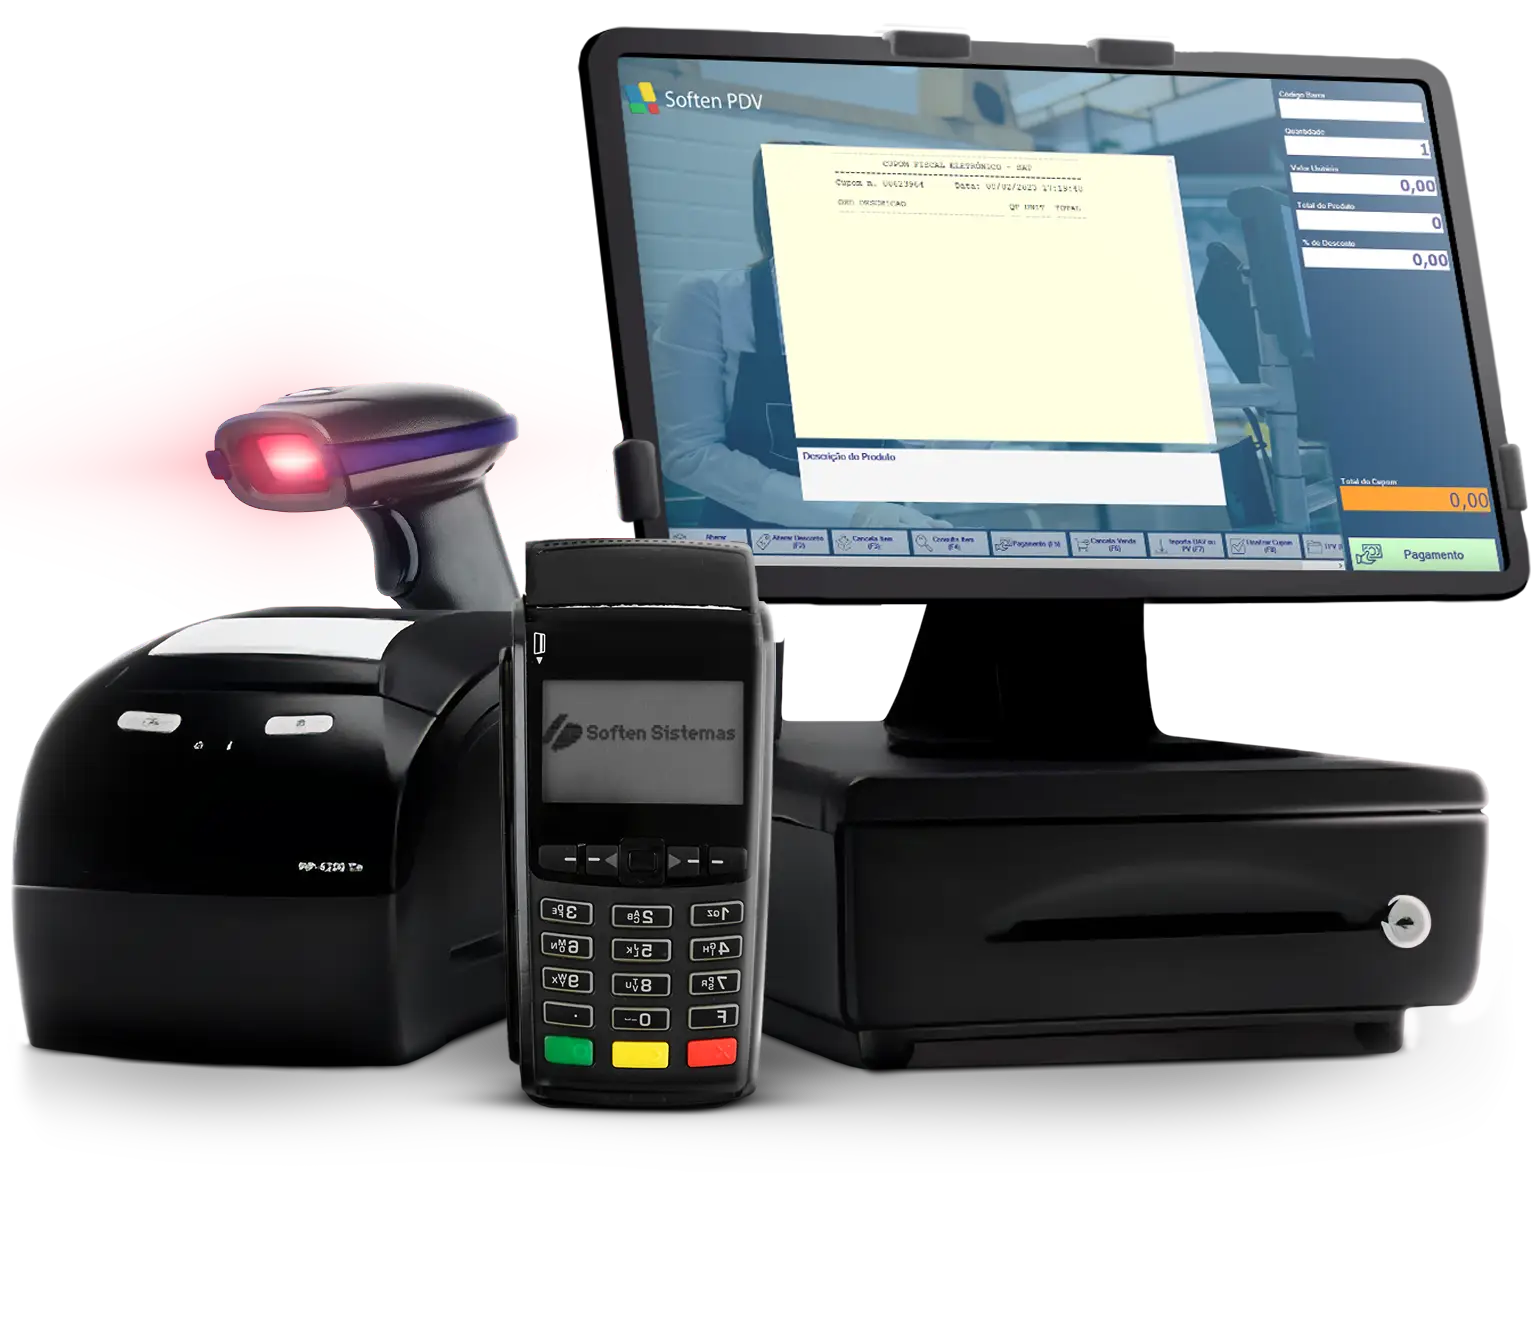 imagem demonstrativa do Soften PDV em uma tela com gaveta, ao lado de uma máquina de cartão, leitor de código de barras e impressora de cupons fiscais